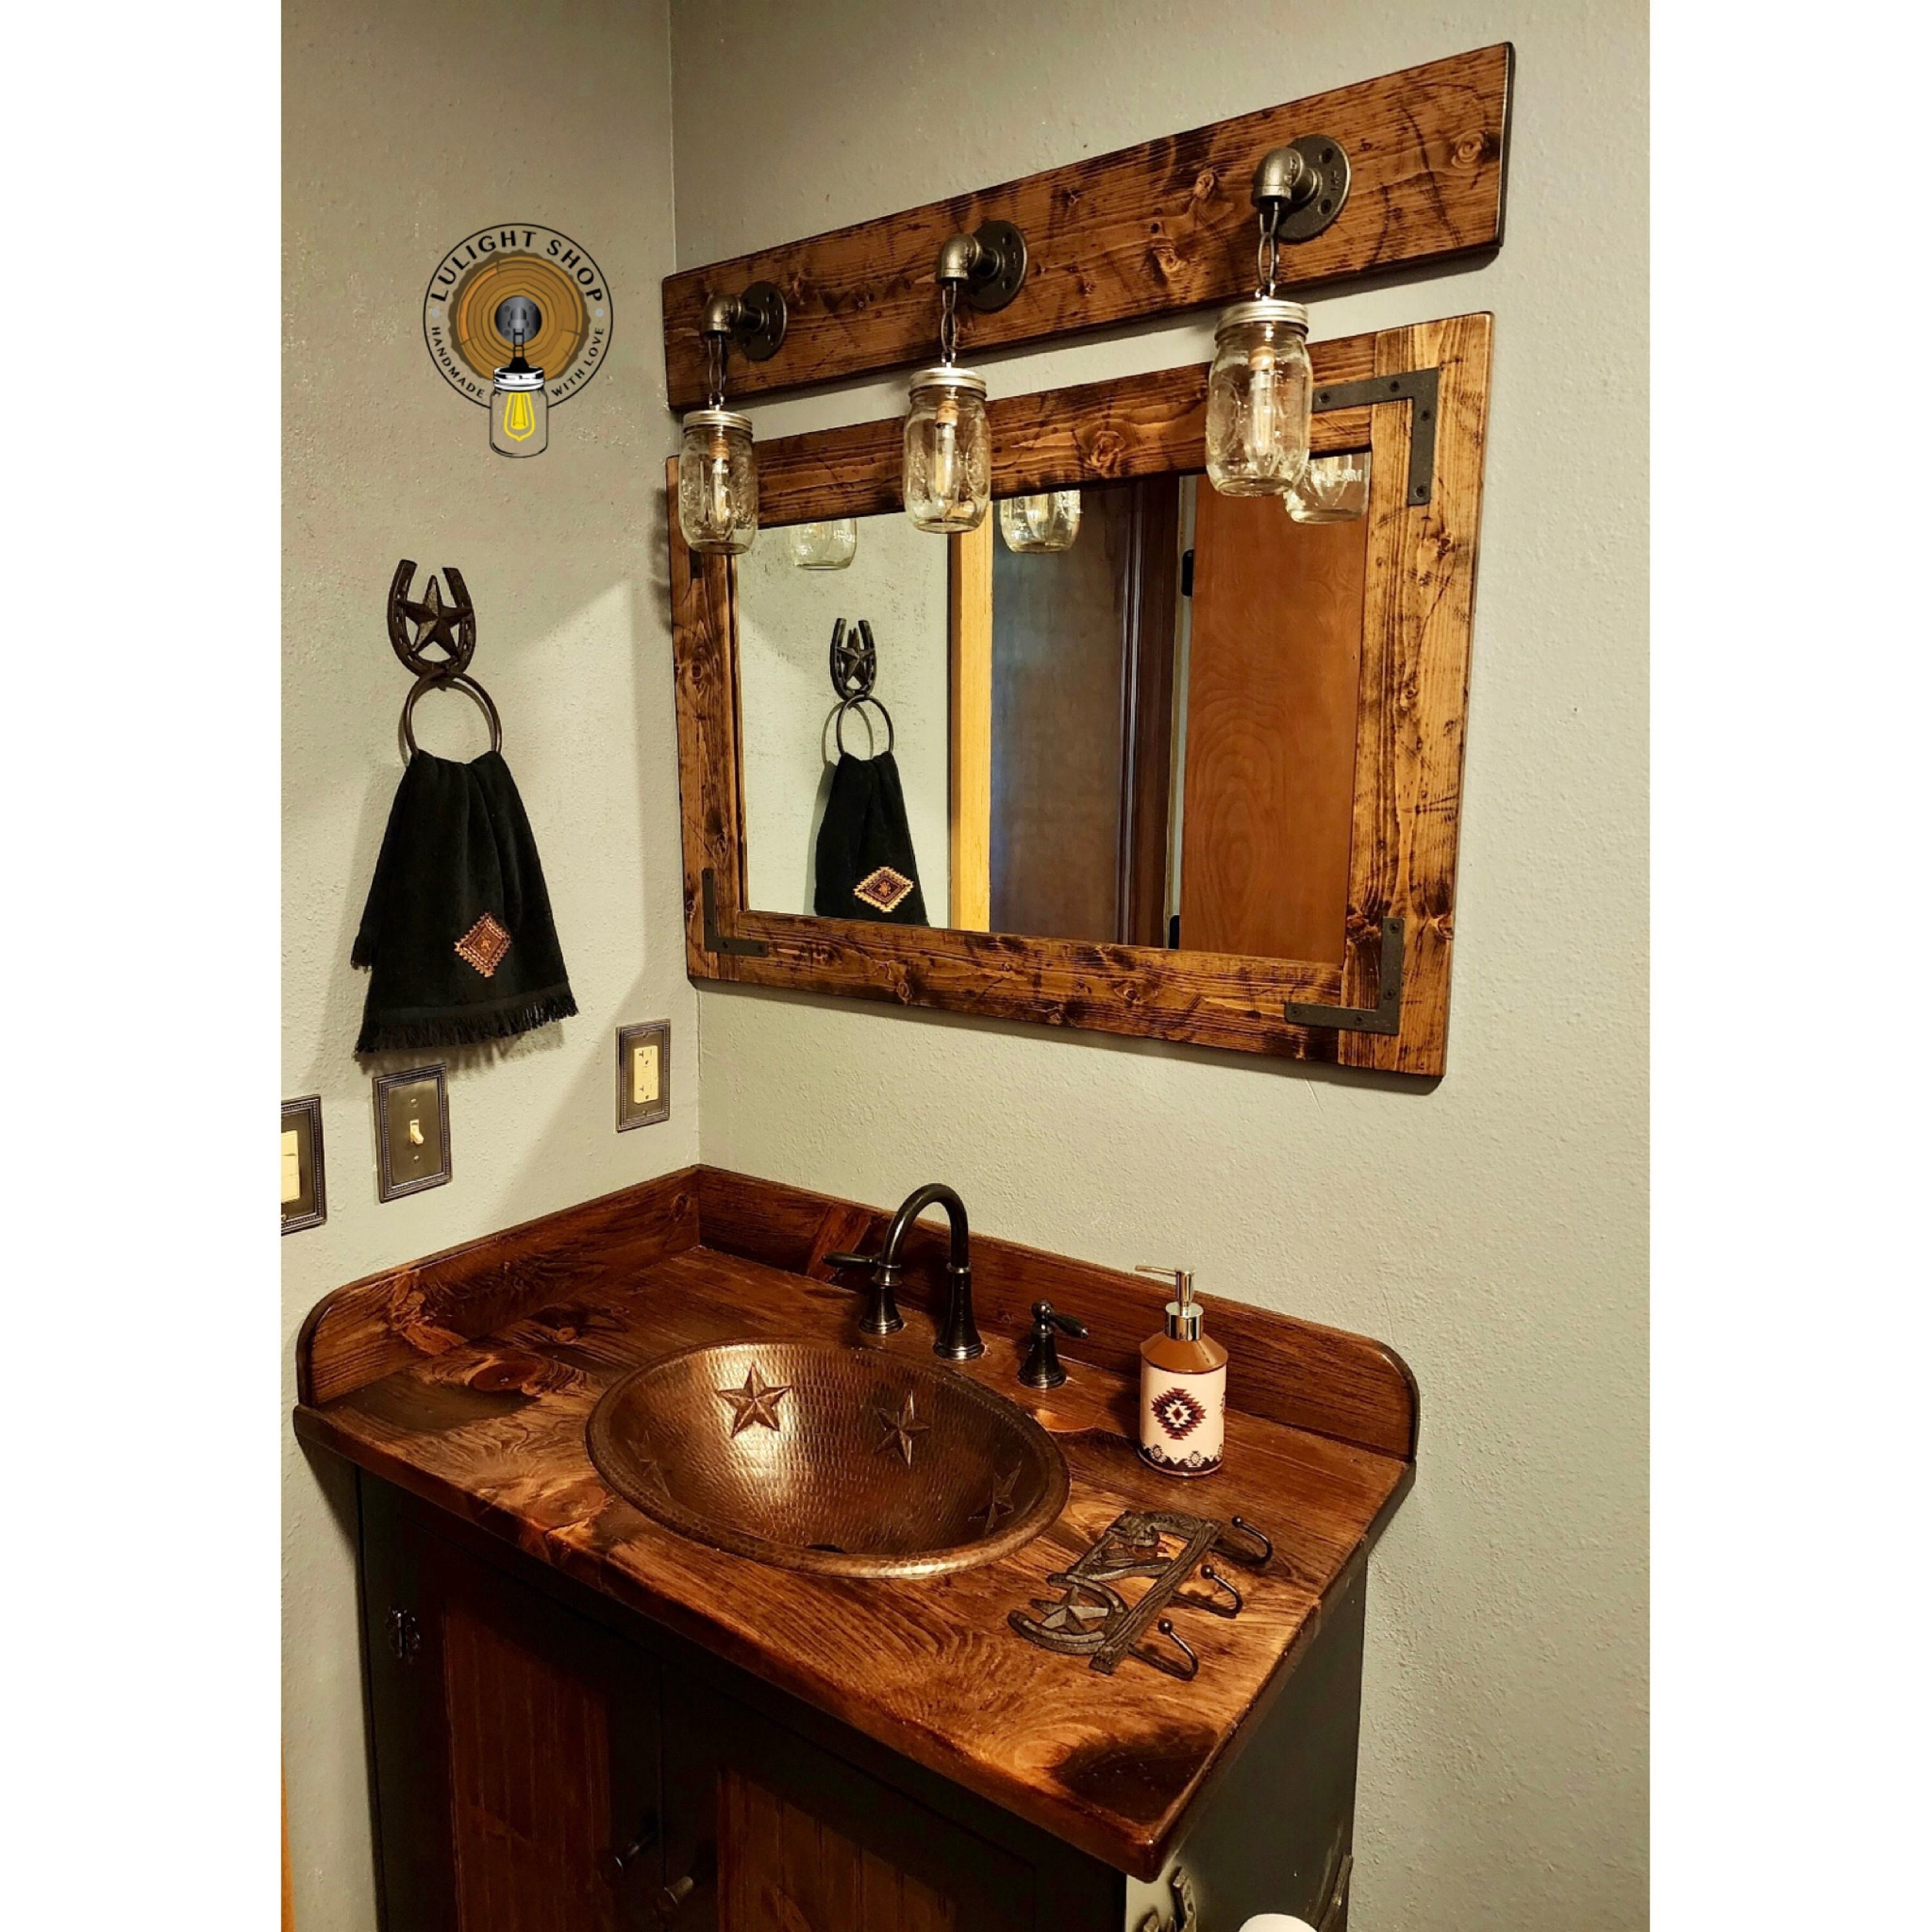 Set of 2 Rustic Light Wood Bathroom Bedroom Kitchen Hanging